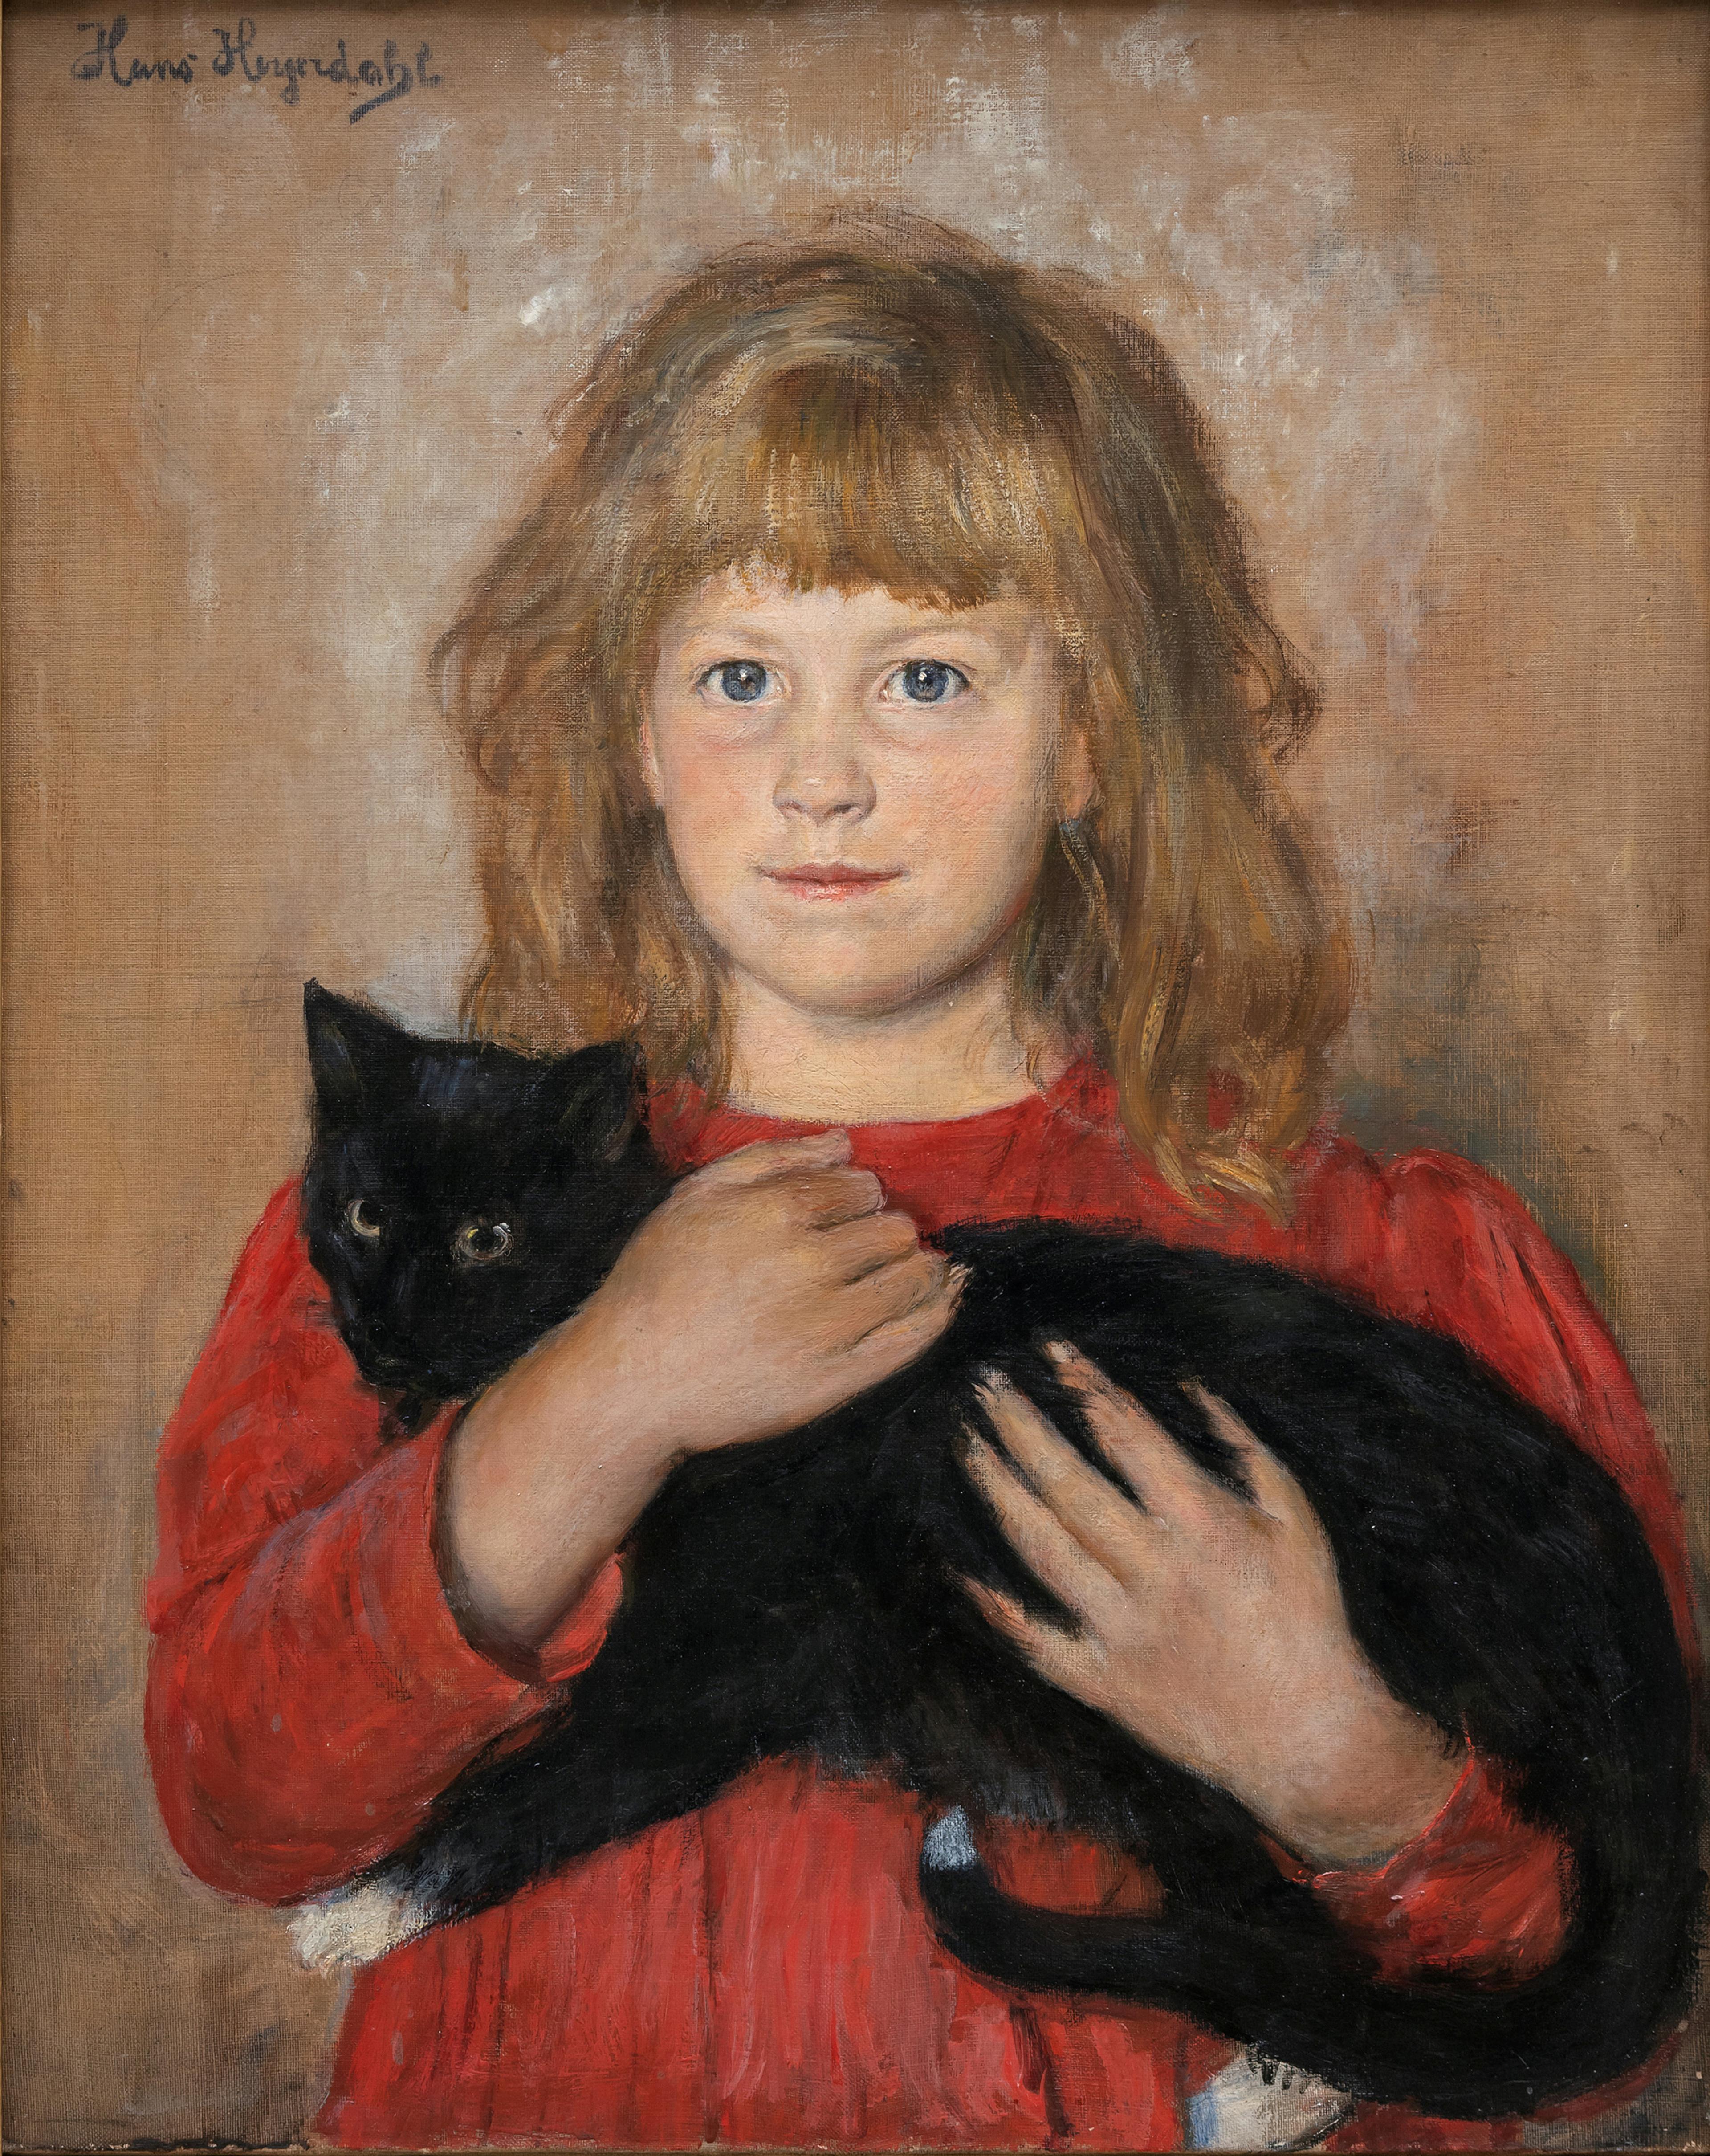 Maleri av en jente i rød kjole som holder en svart katt.